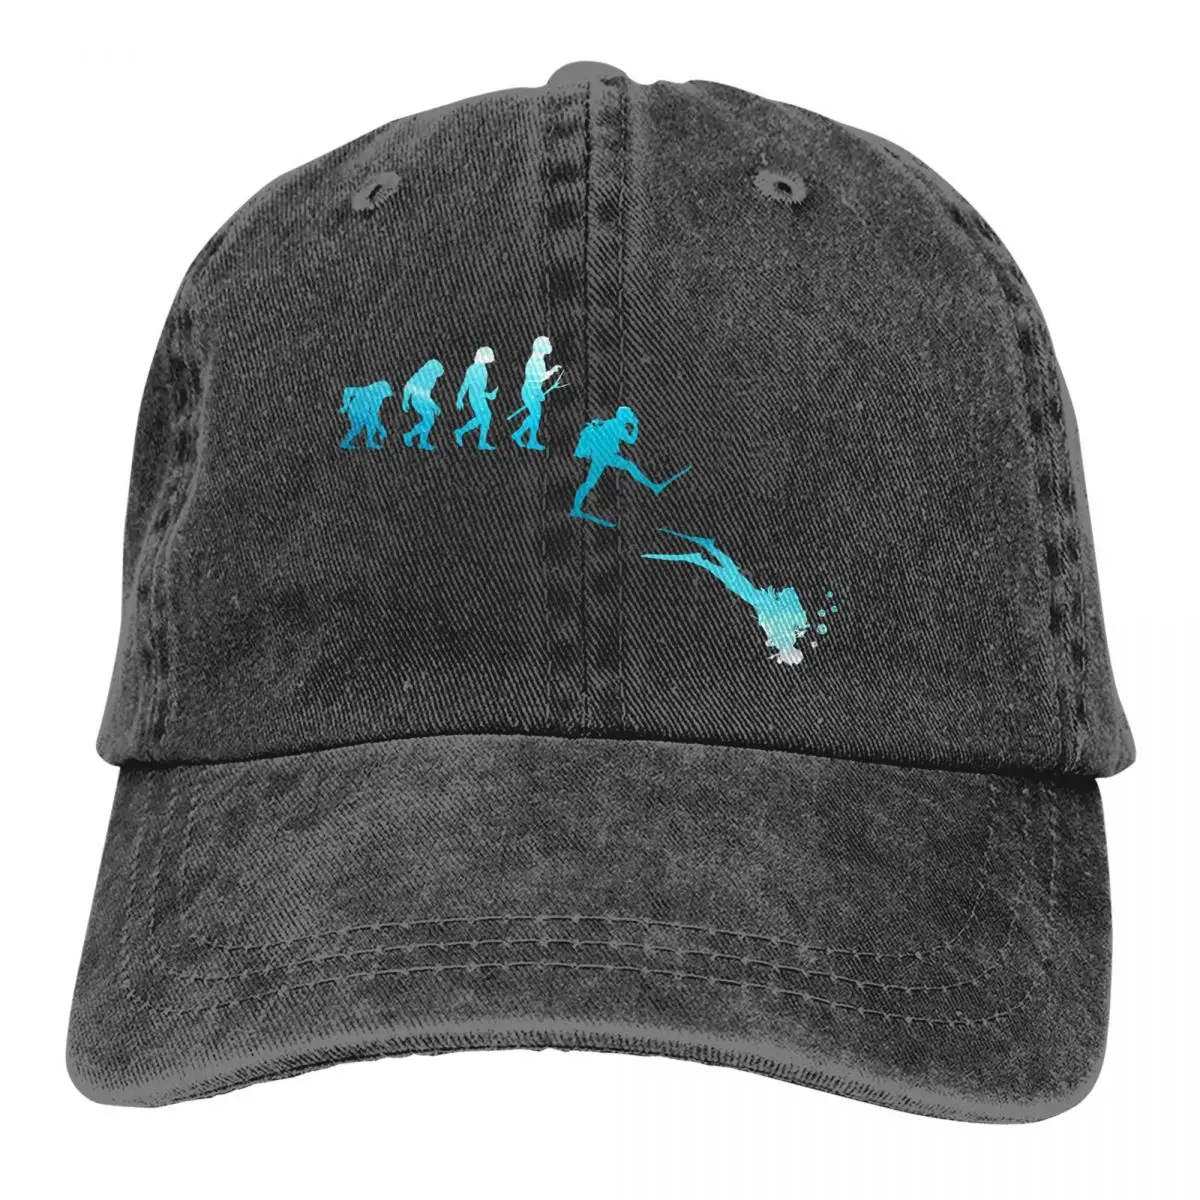 

Dive Scuba Diving Multicolor Hat Peaked Men Women's Cowboy Cap Evolution Baseball Caps Personalized Visor Protect Hats